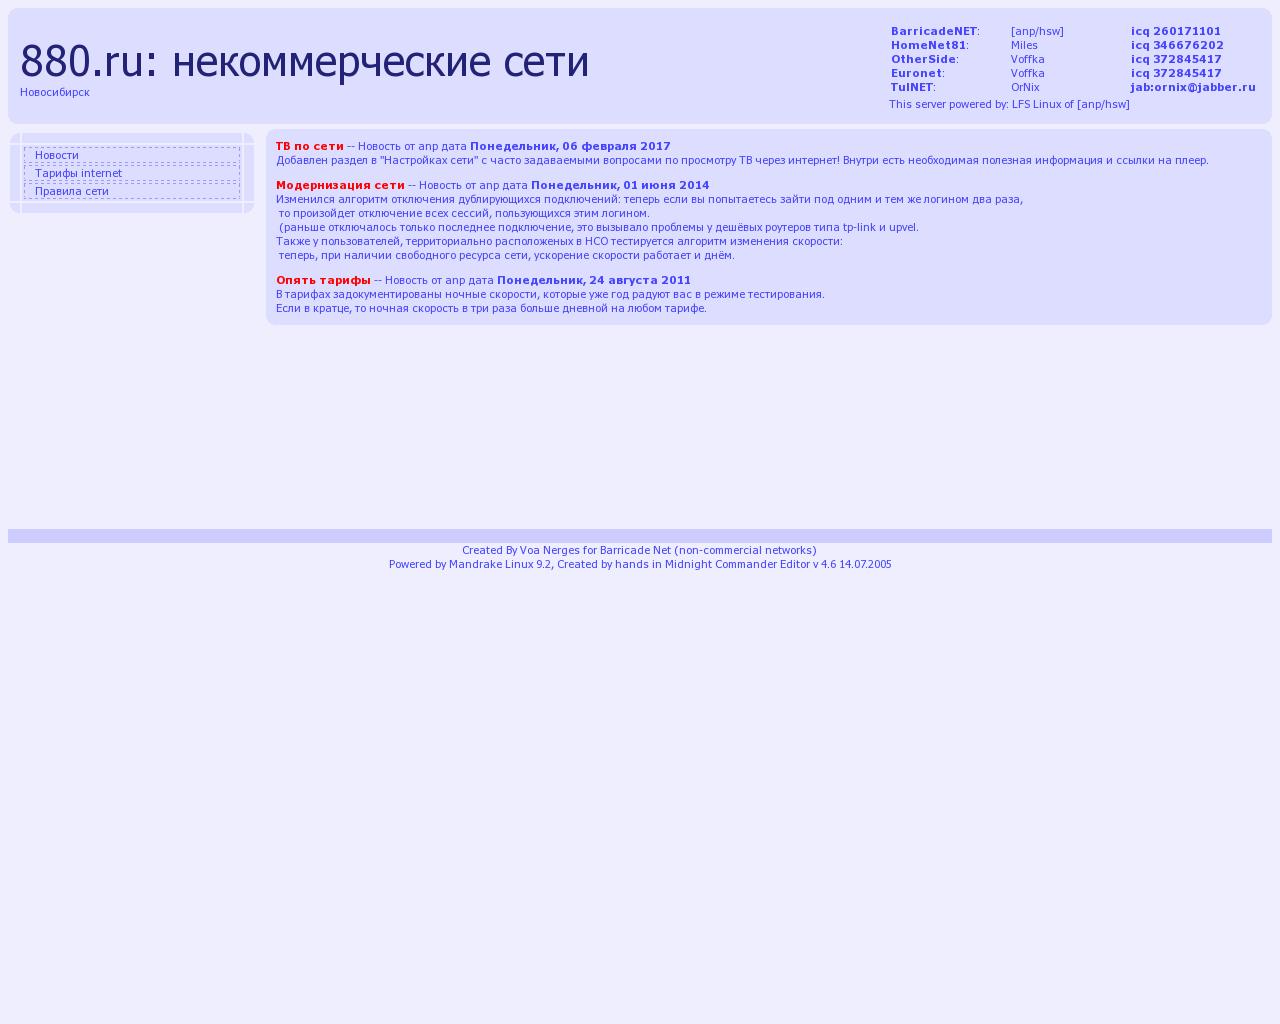 Изображение сайта 880.ru в разрешении 1280x1024